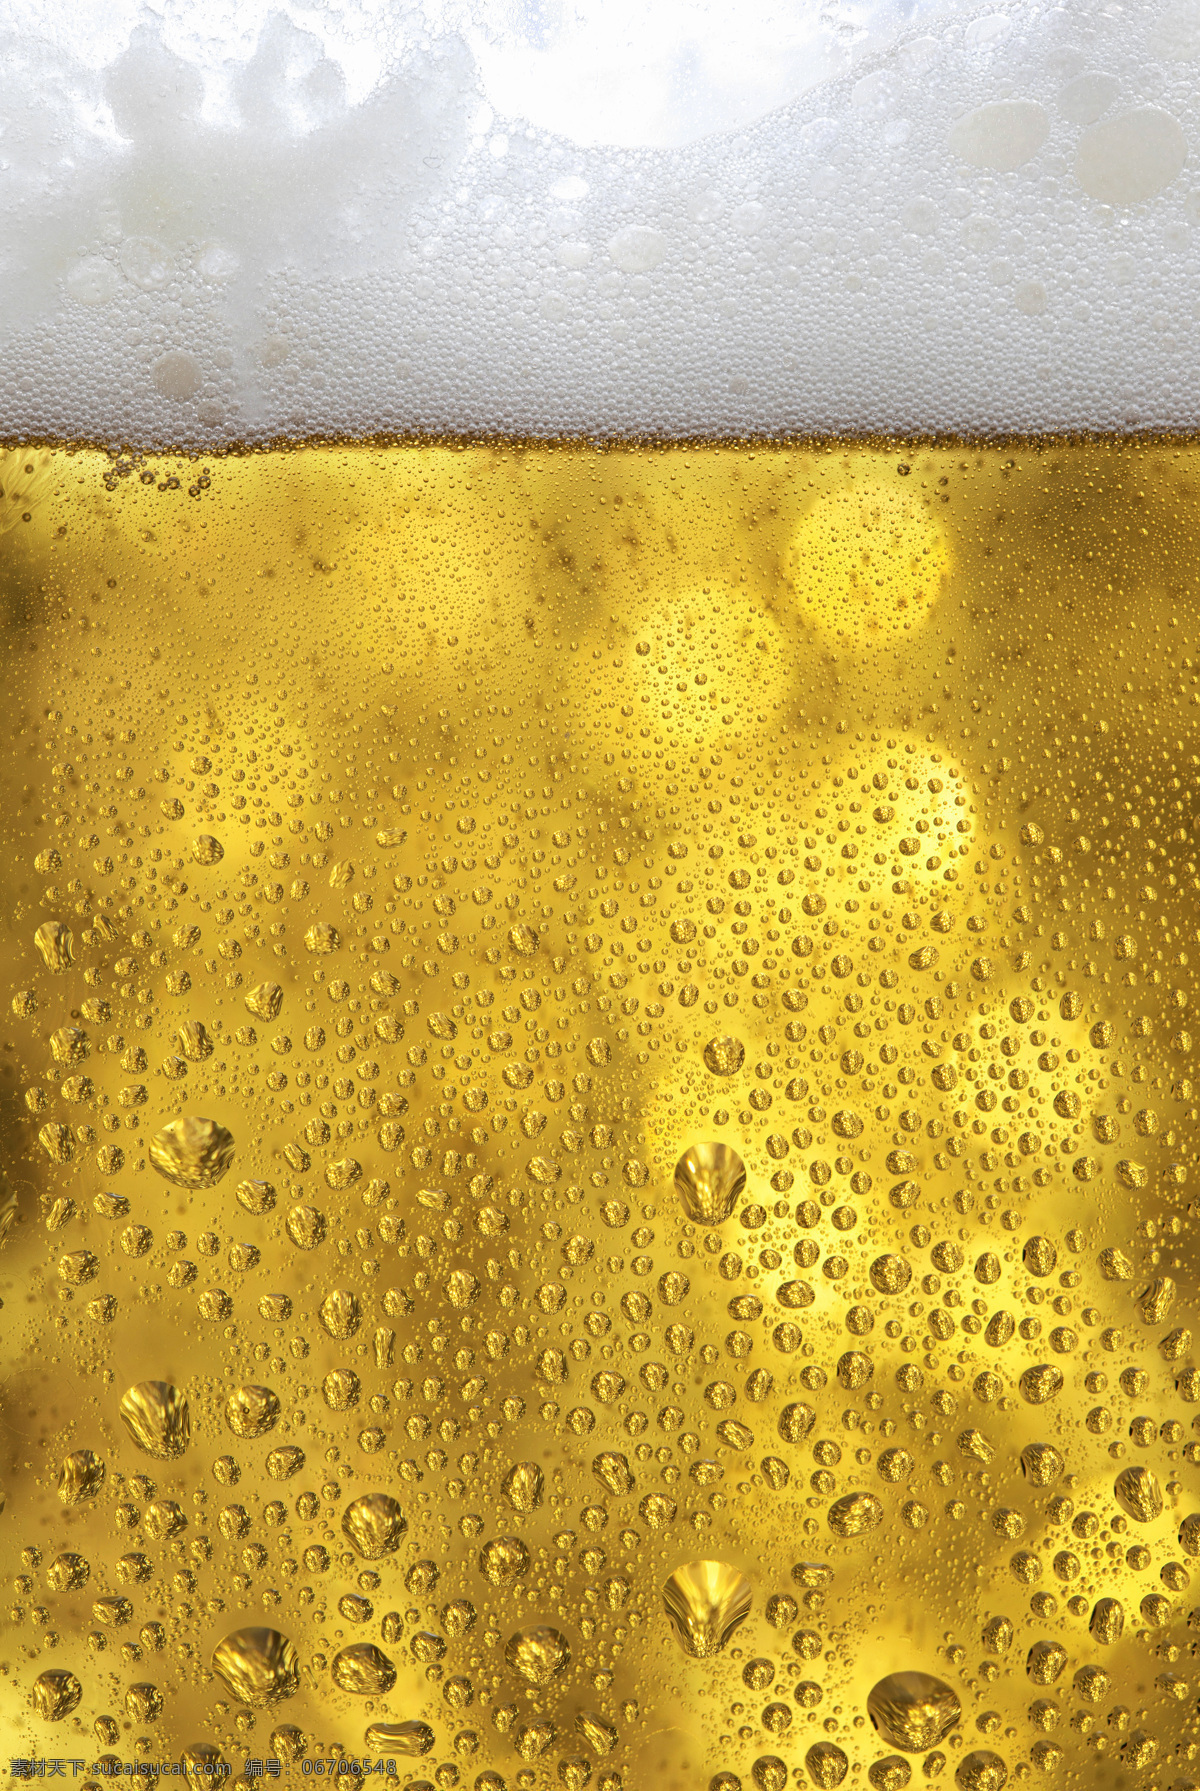 啤酒 水珠 背景 酒水 饮料 啤酒杯 杯子 玻璃杯 水珠背景 酒类图片 餐饮美食